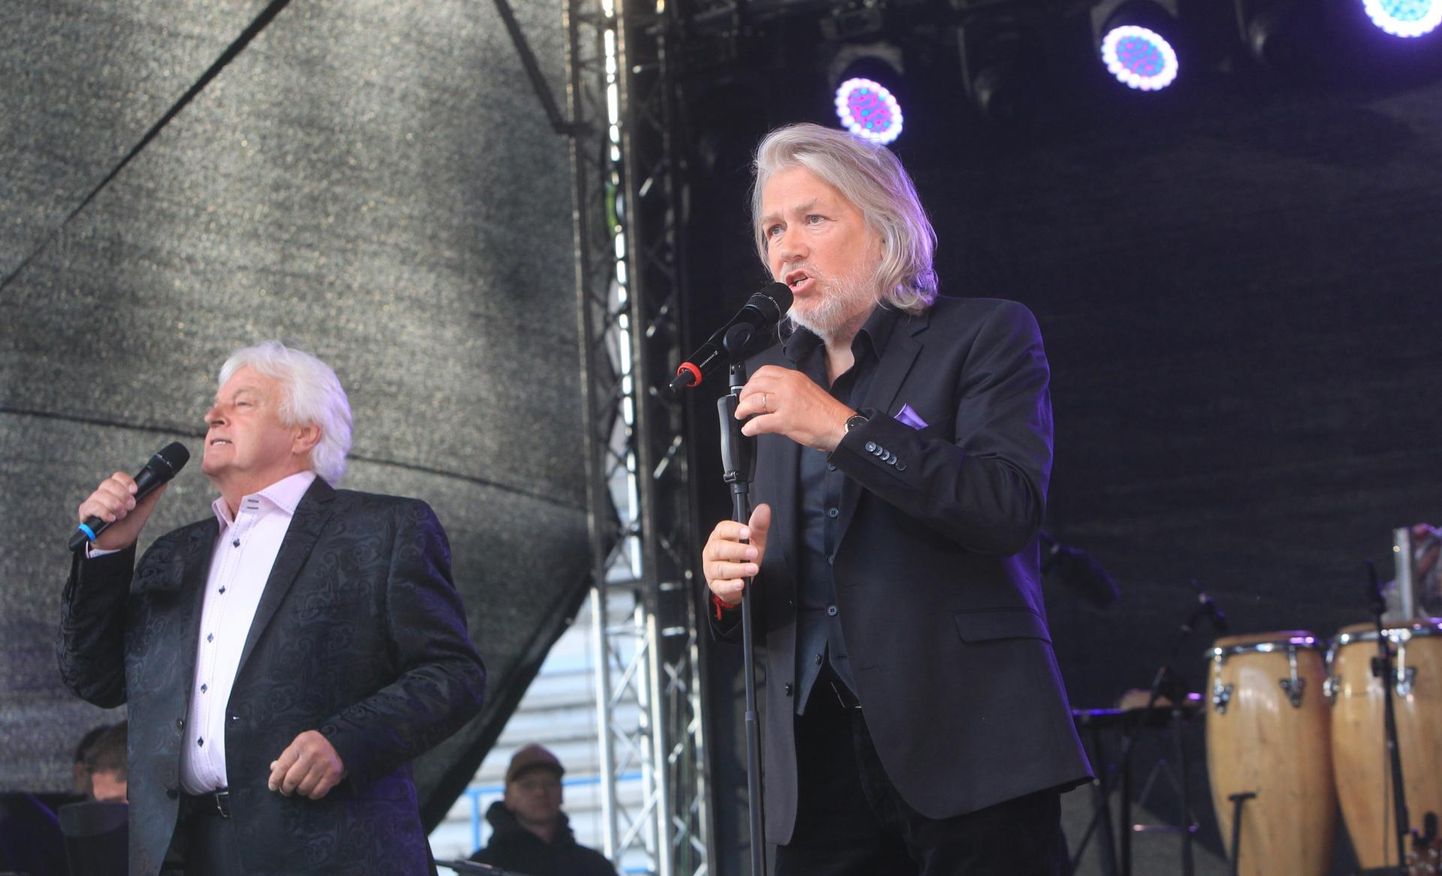 Tőnis Mägi ja Ivo Linna esinemas Tartu lauluväljakul 2016. aastal kontserdil.